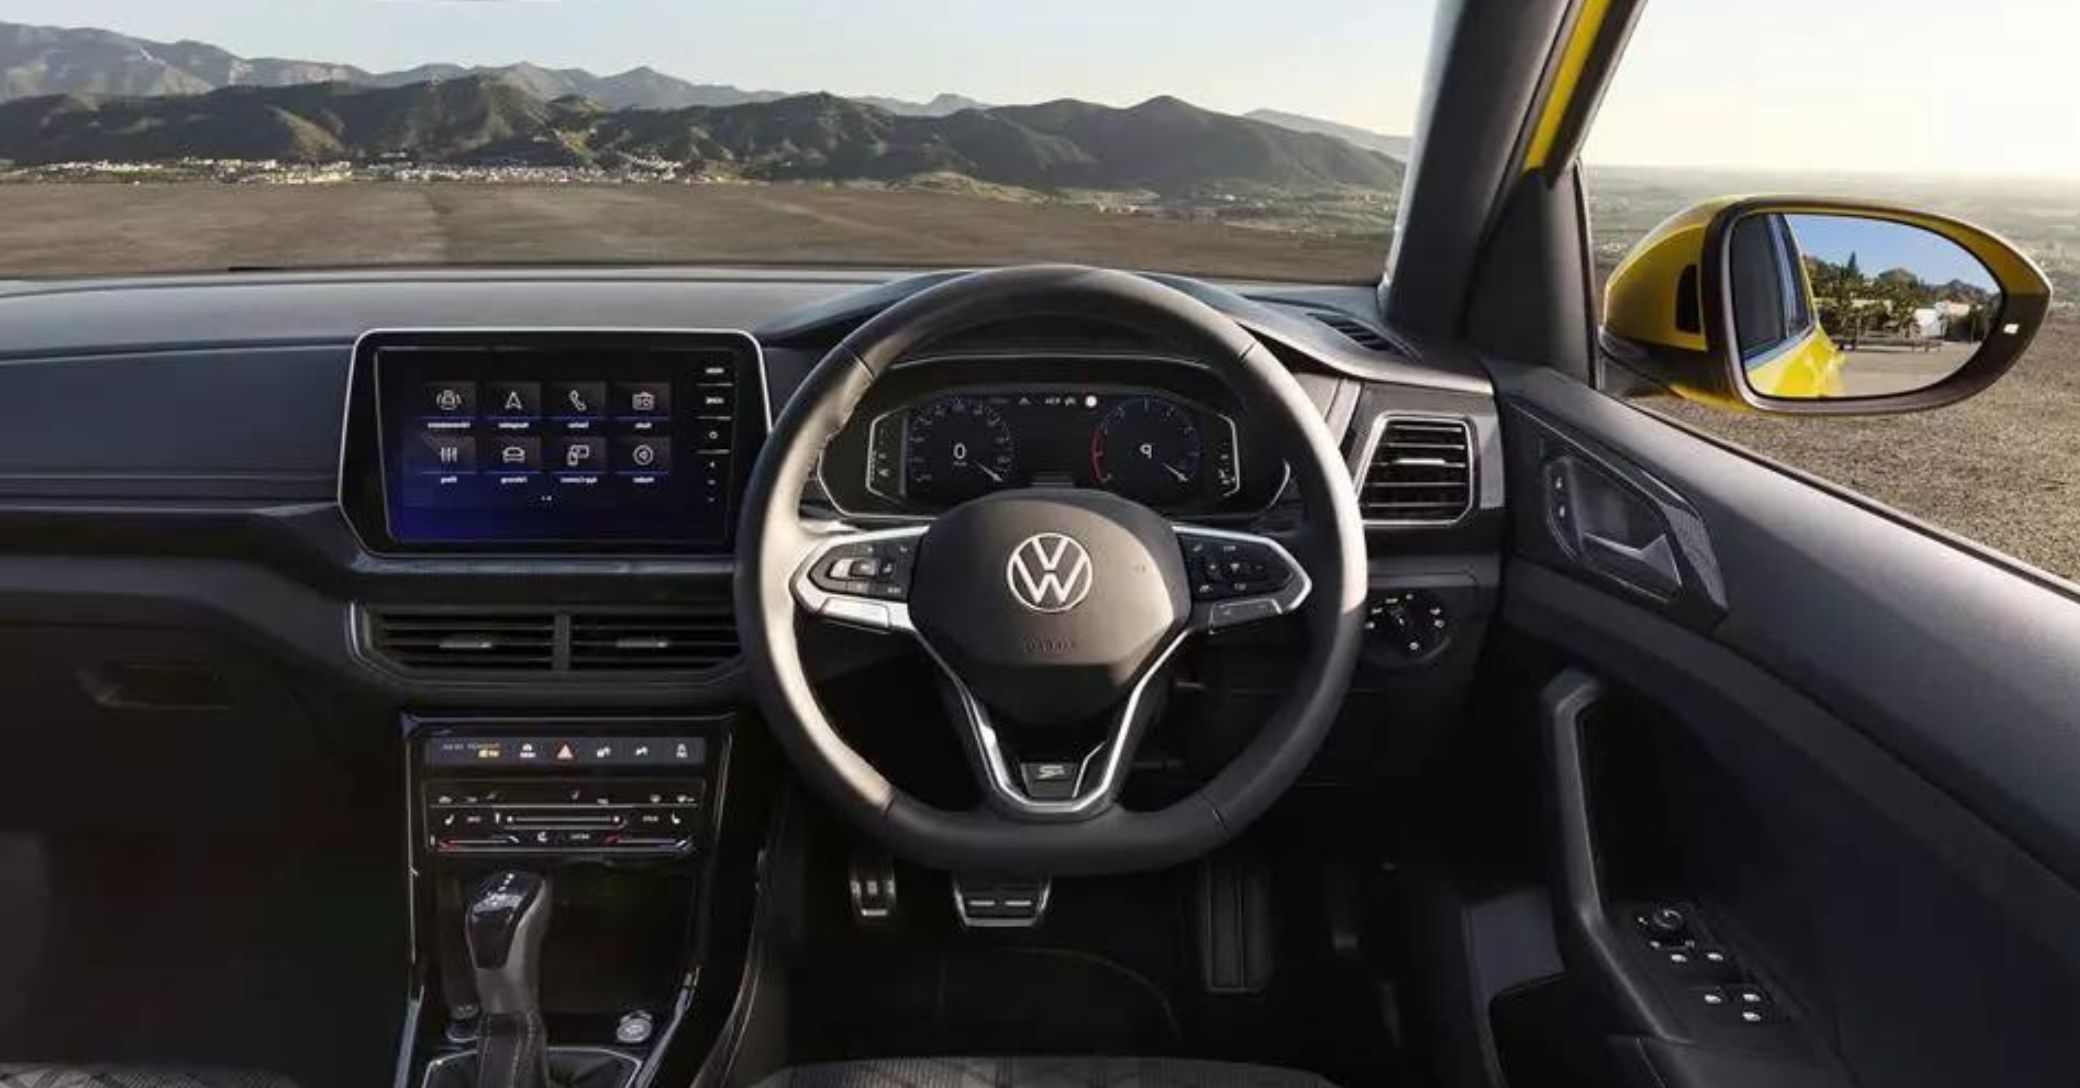 Volkswagen-T-Cross